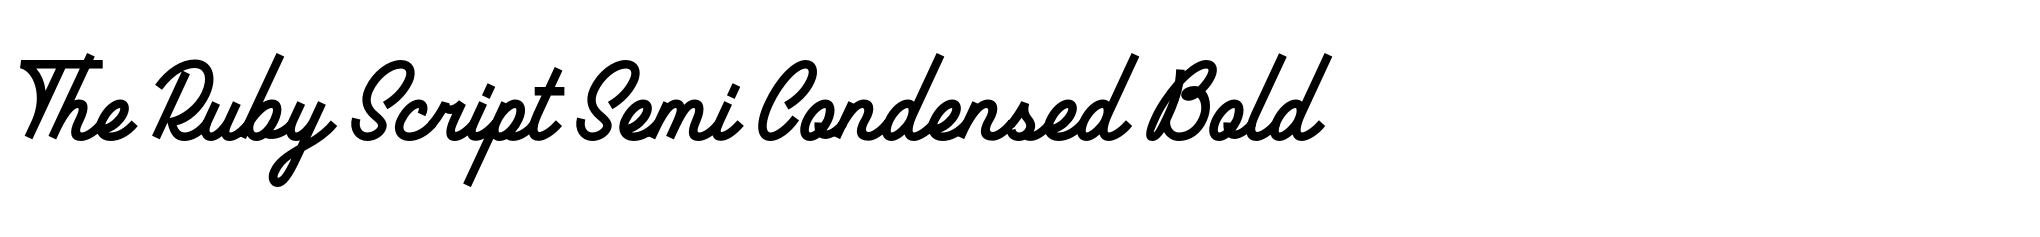 The Ruby Script Semi Condensed Bold image